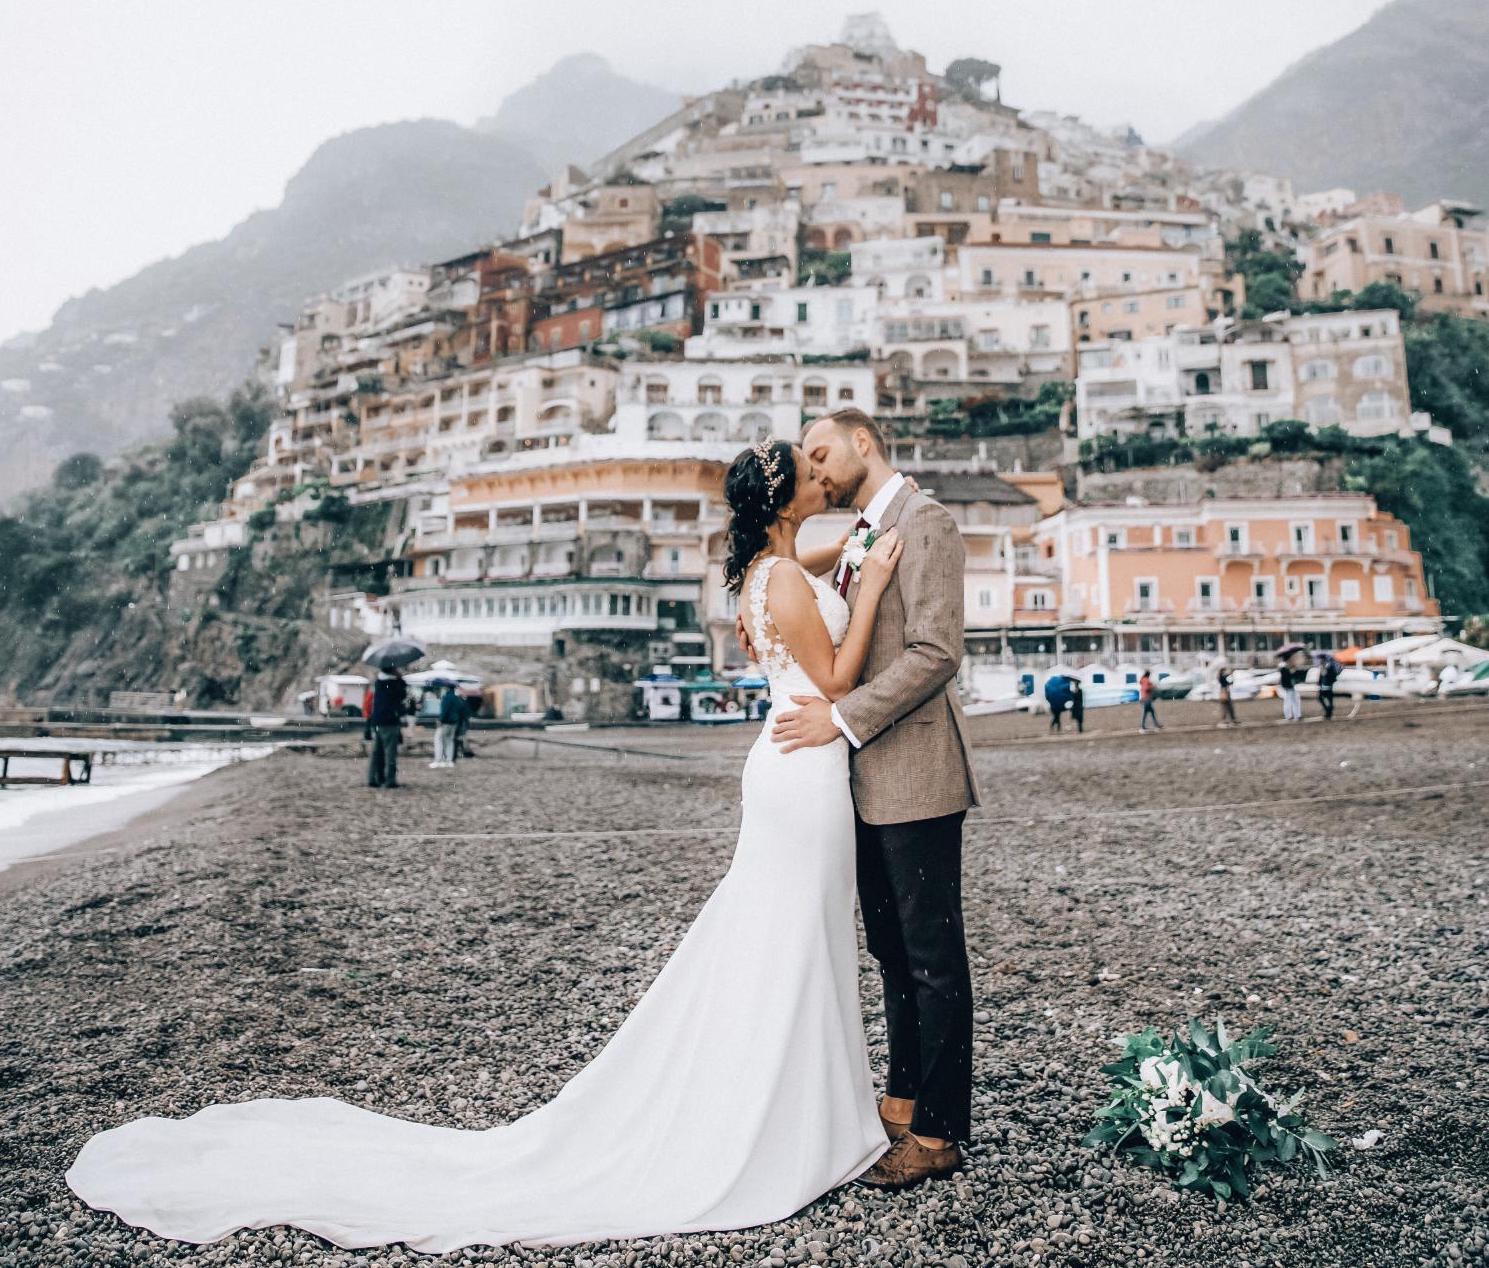 Wasze śluby — potajemny ślub we włoskim Positano!